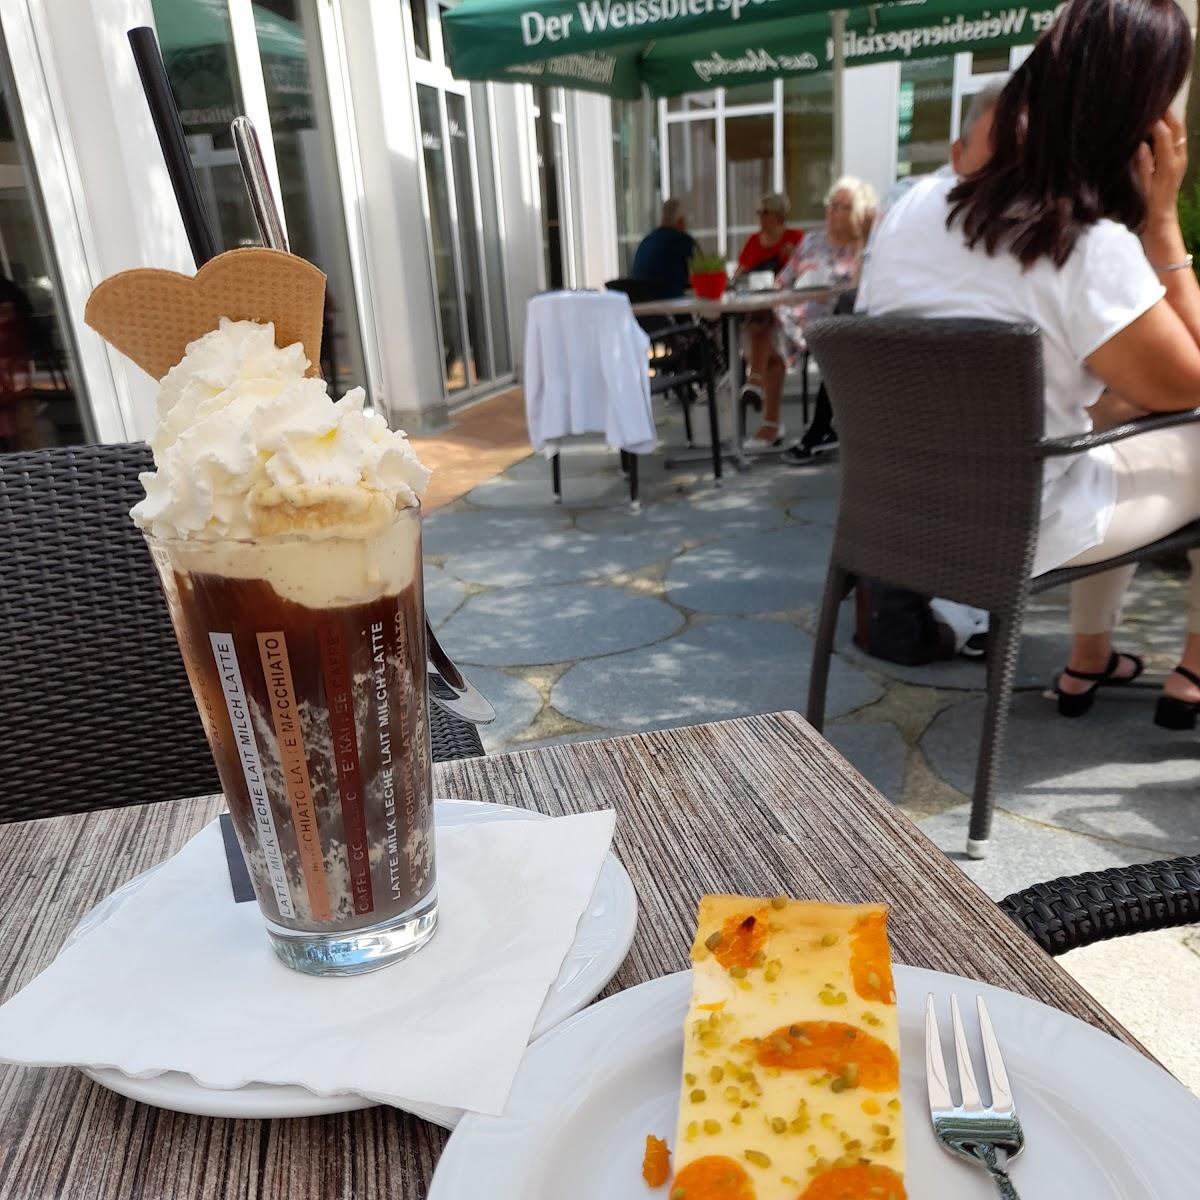 Restaurant "Cafe im Kurhaus" in Neustadt an der Donau